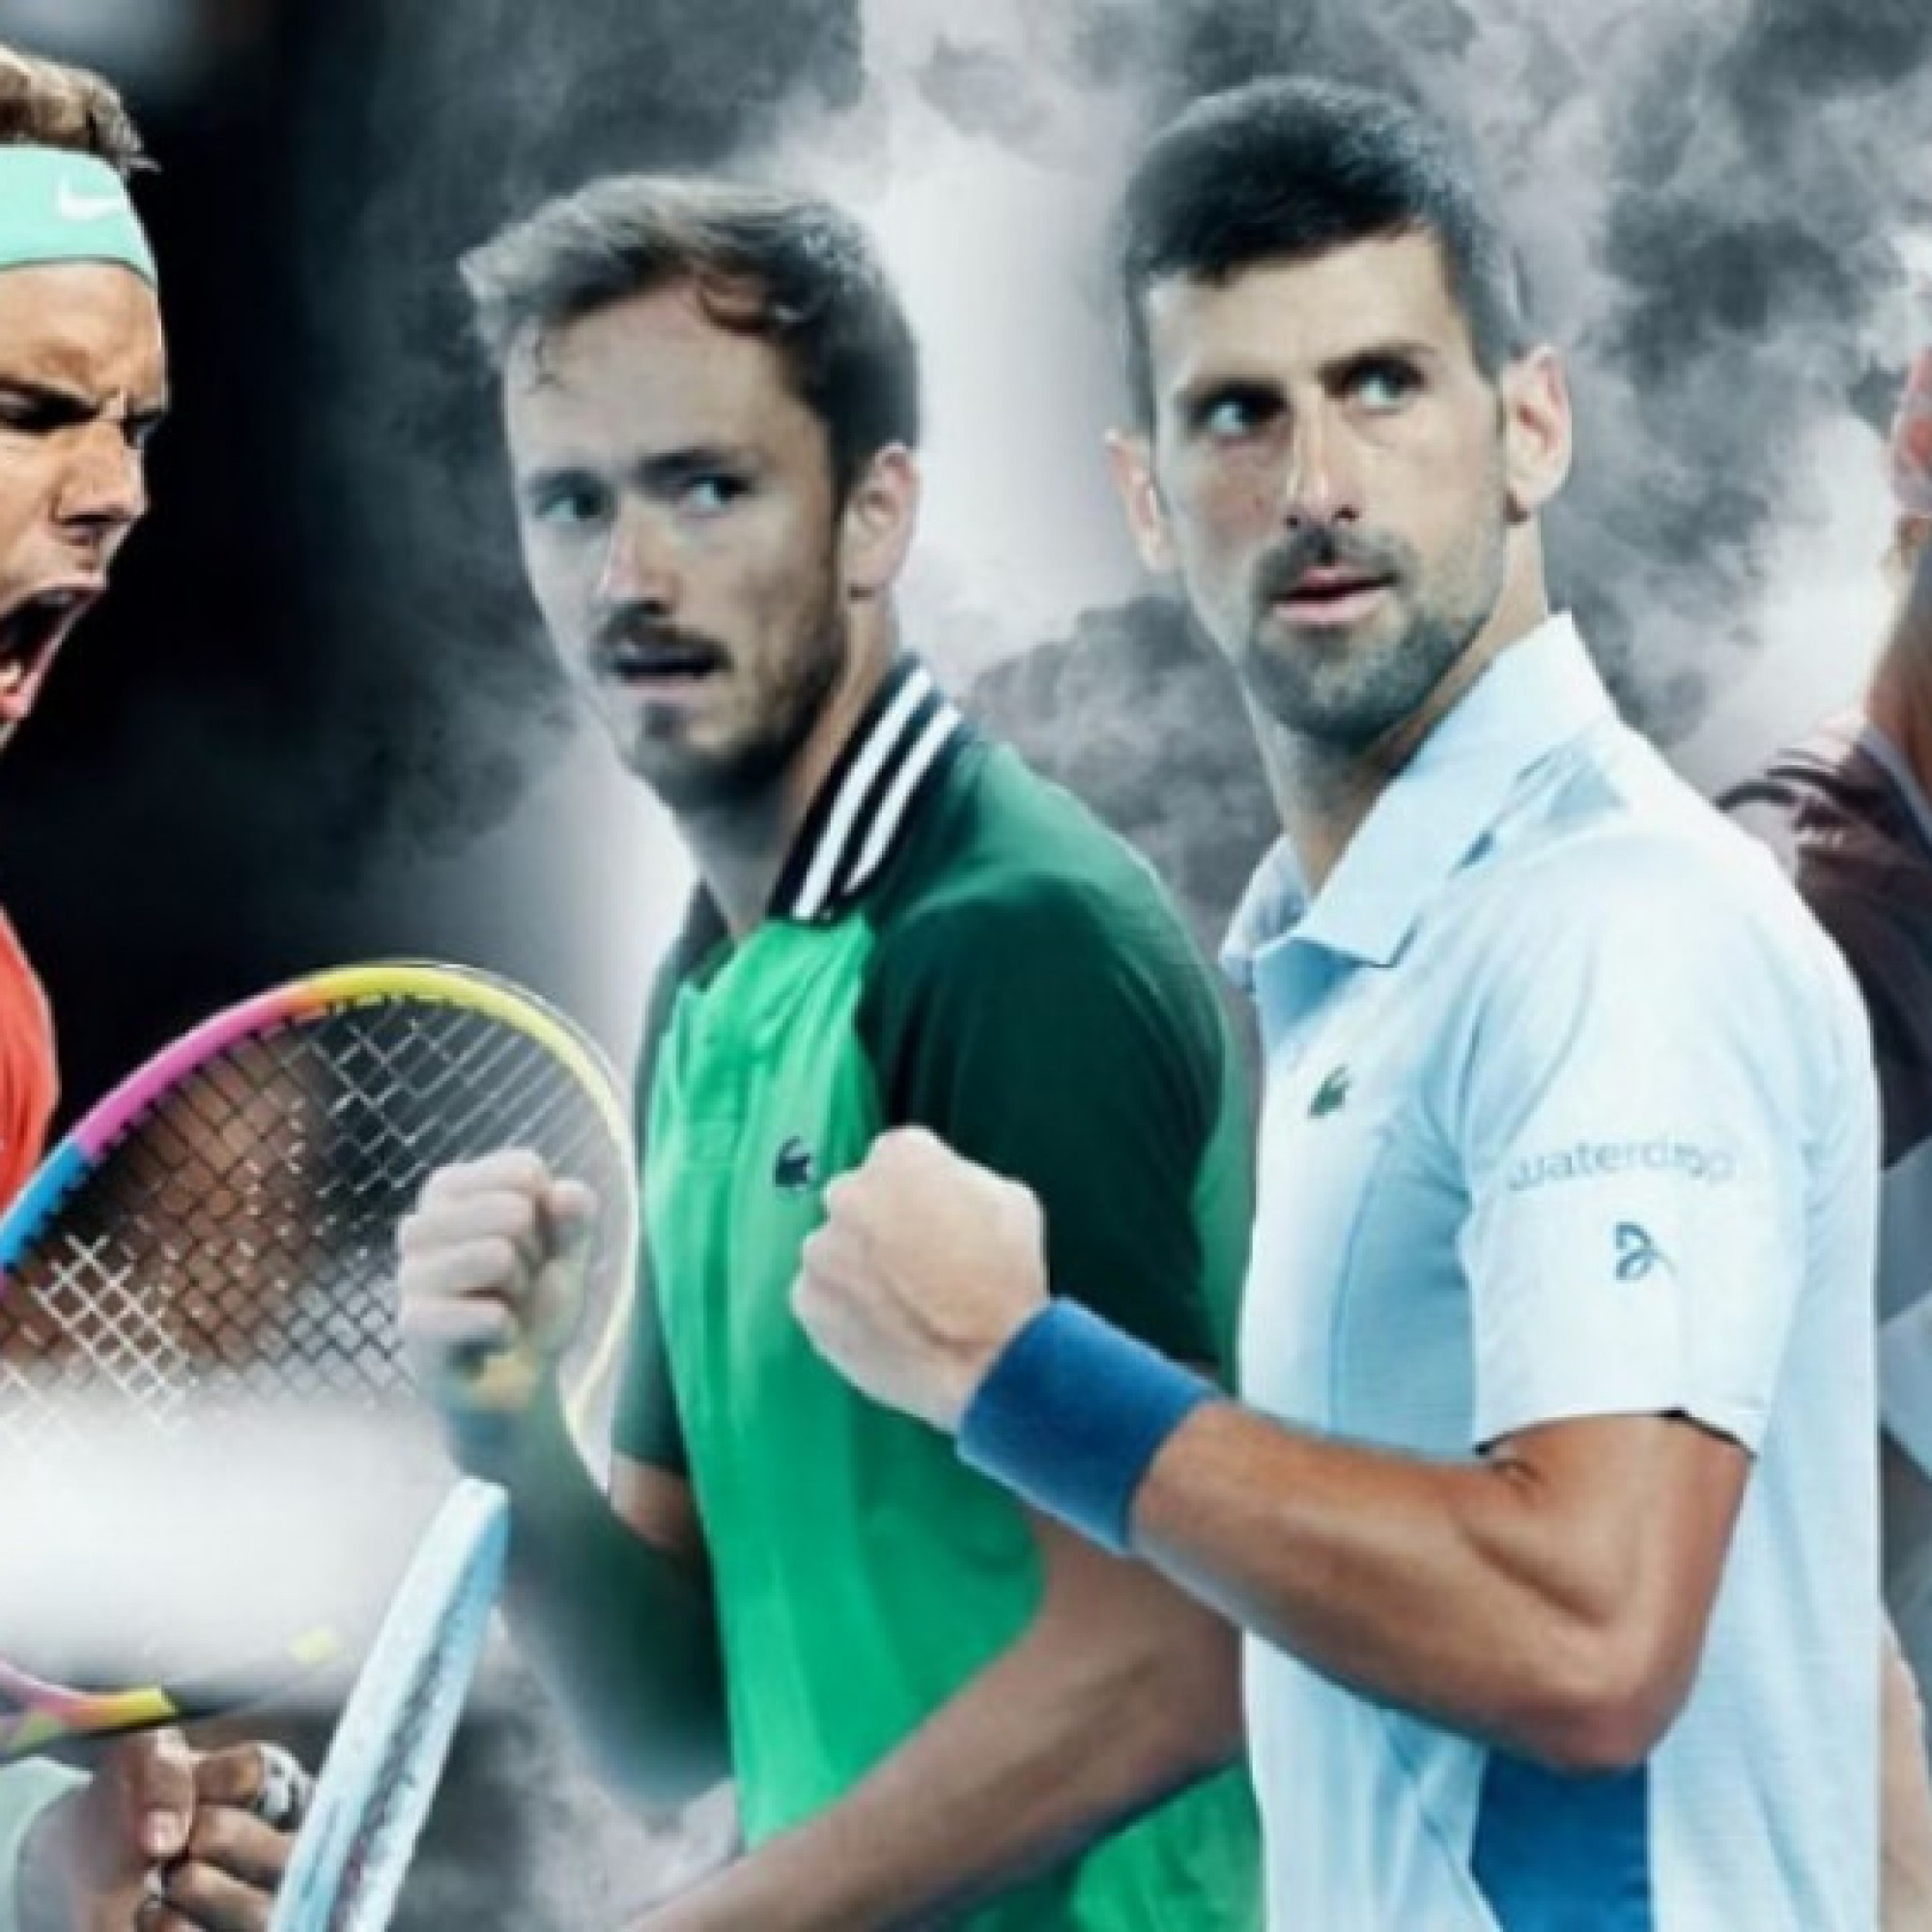  - LỊCH THI ĐẤU LIVESCORE TENNIS HÔM NAY: Tâm điểm Rome Open, Nadal đấu Hurkacz